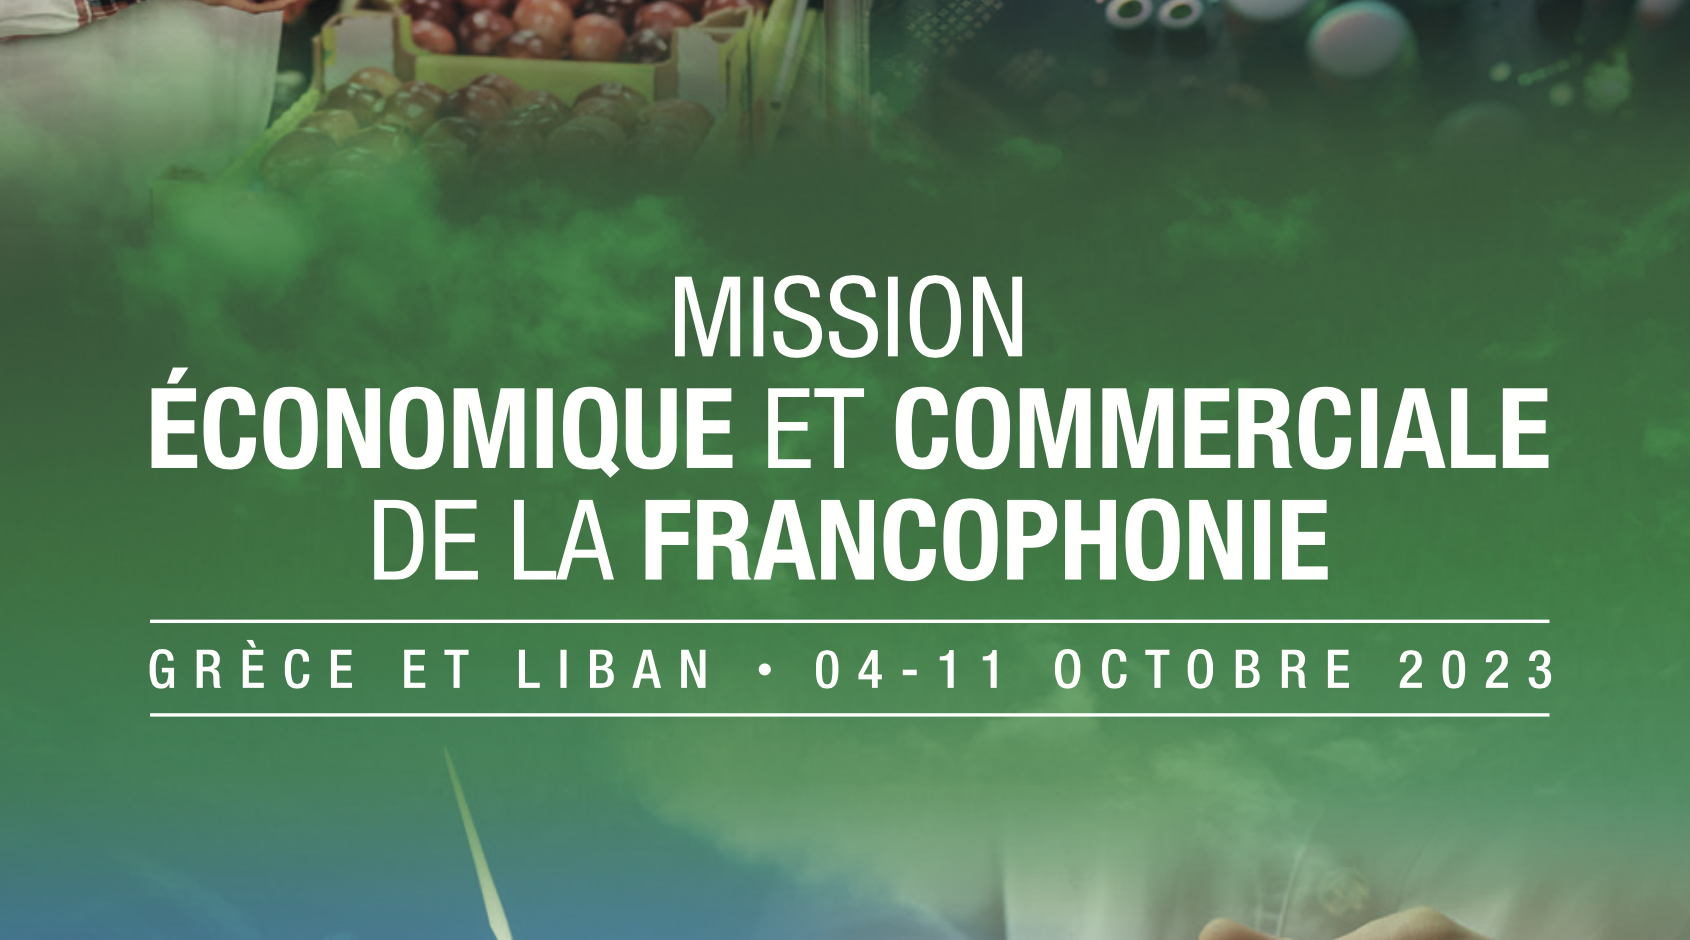 Mission Economique et Commerciale de la Francophonie – Grèce et Liban, du 04 au 11 octobre 2023